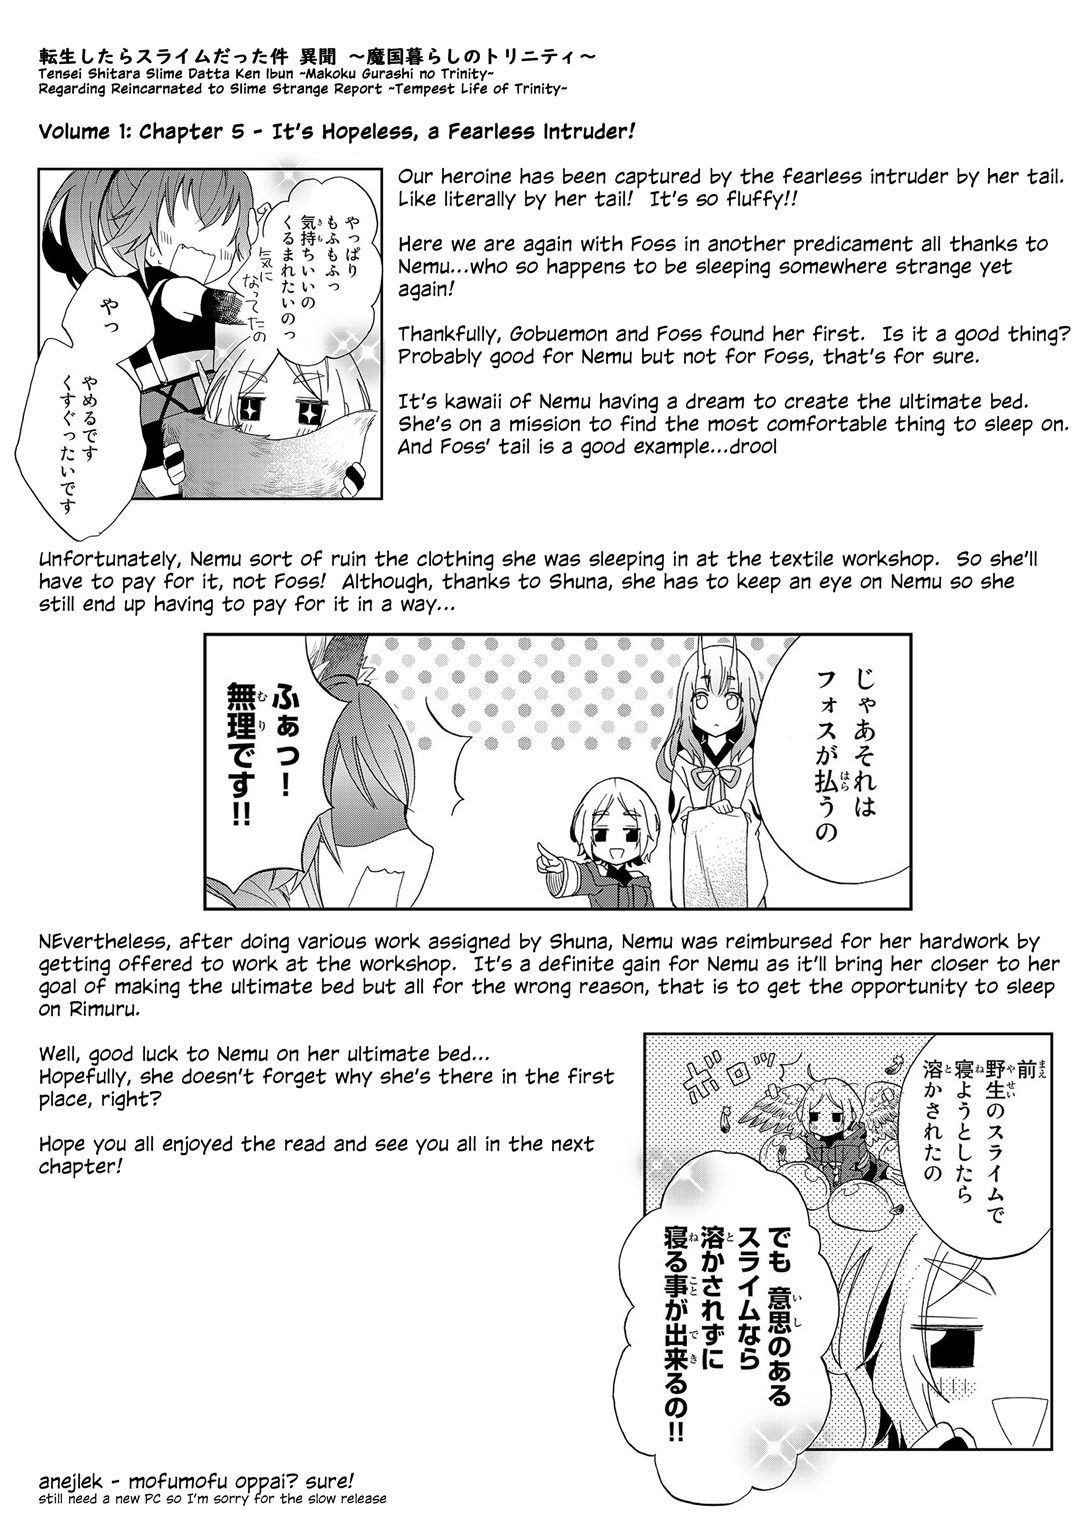 Tensei shitara Slime datta Ken Ibun: Makuni Kurashi no Trinity vol.1 ch.5